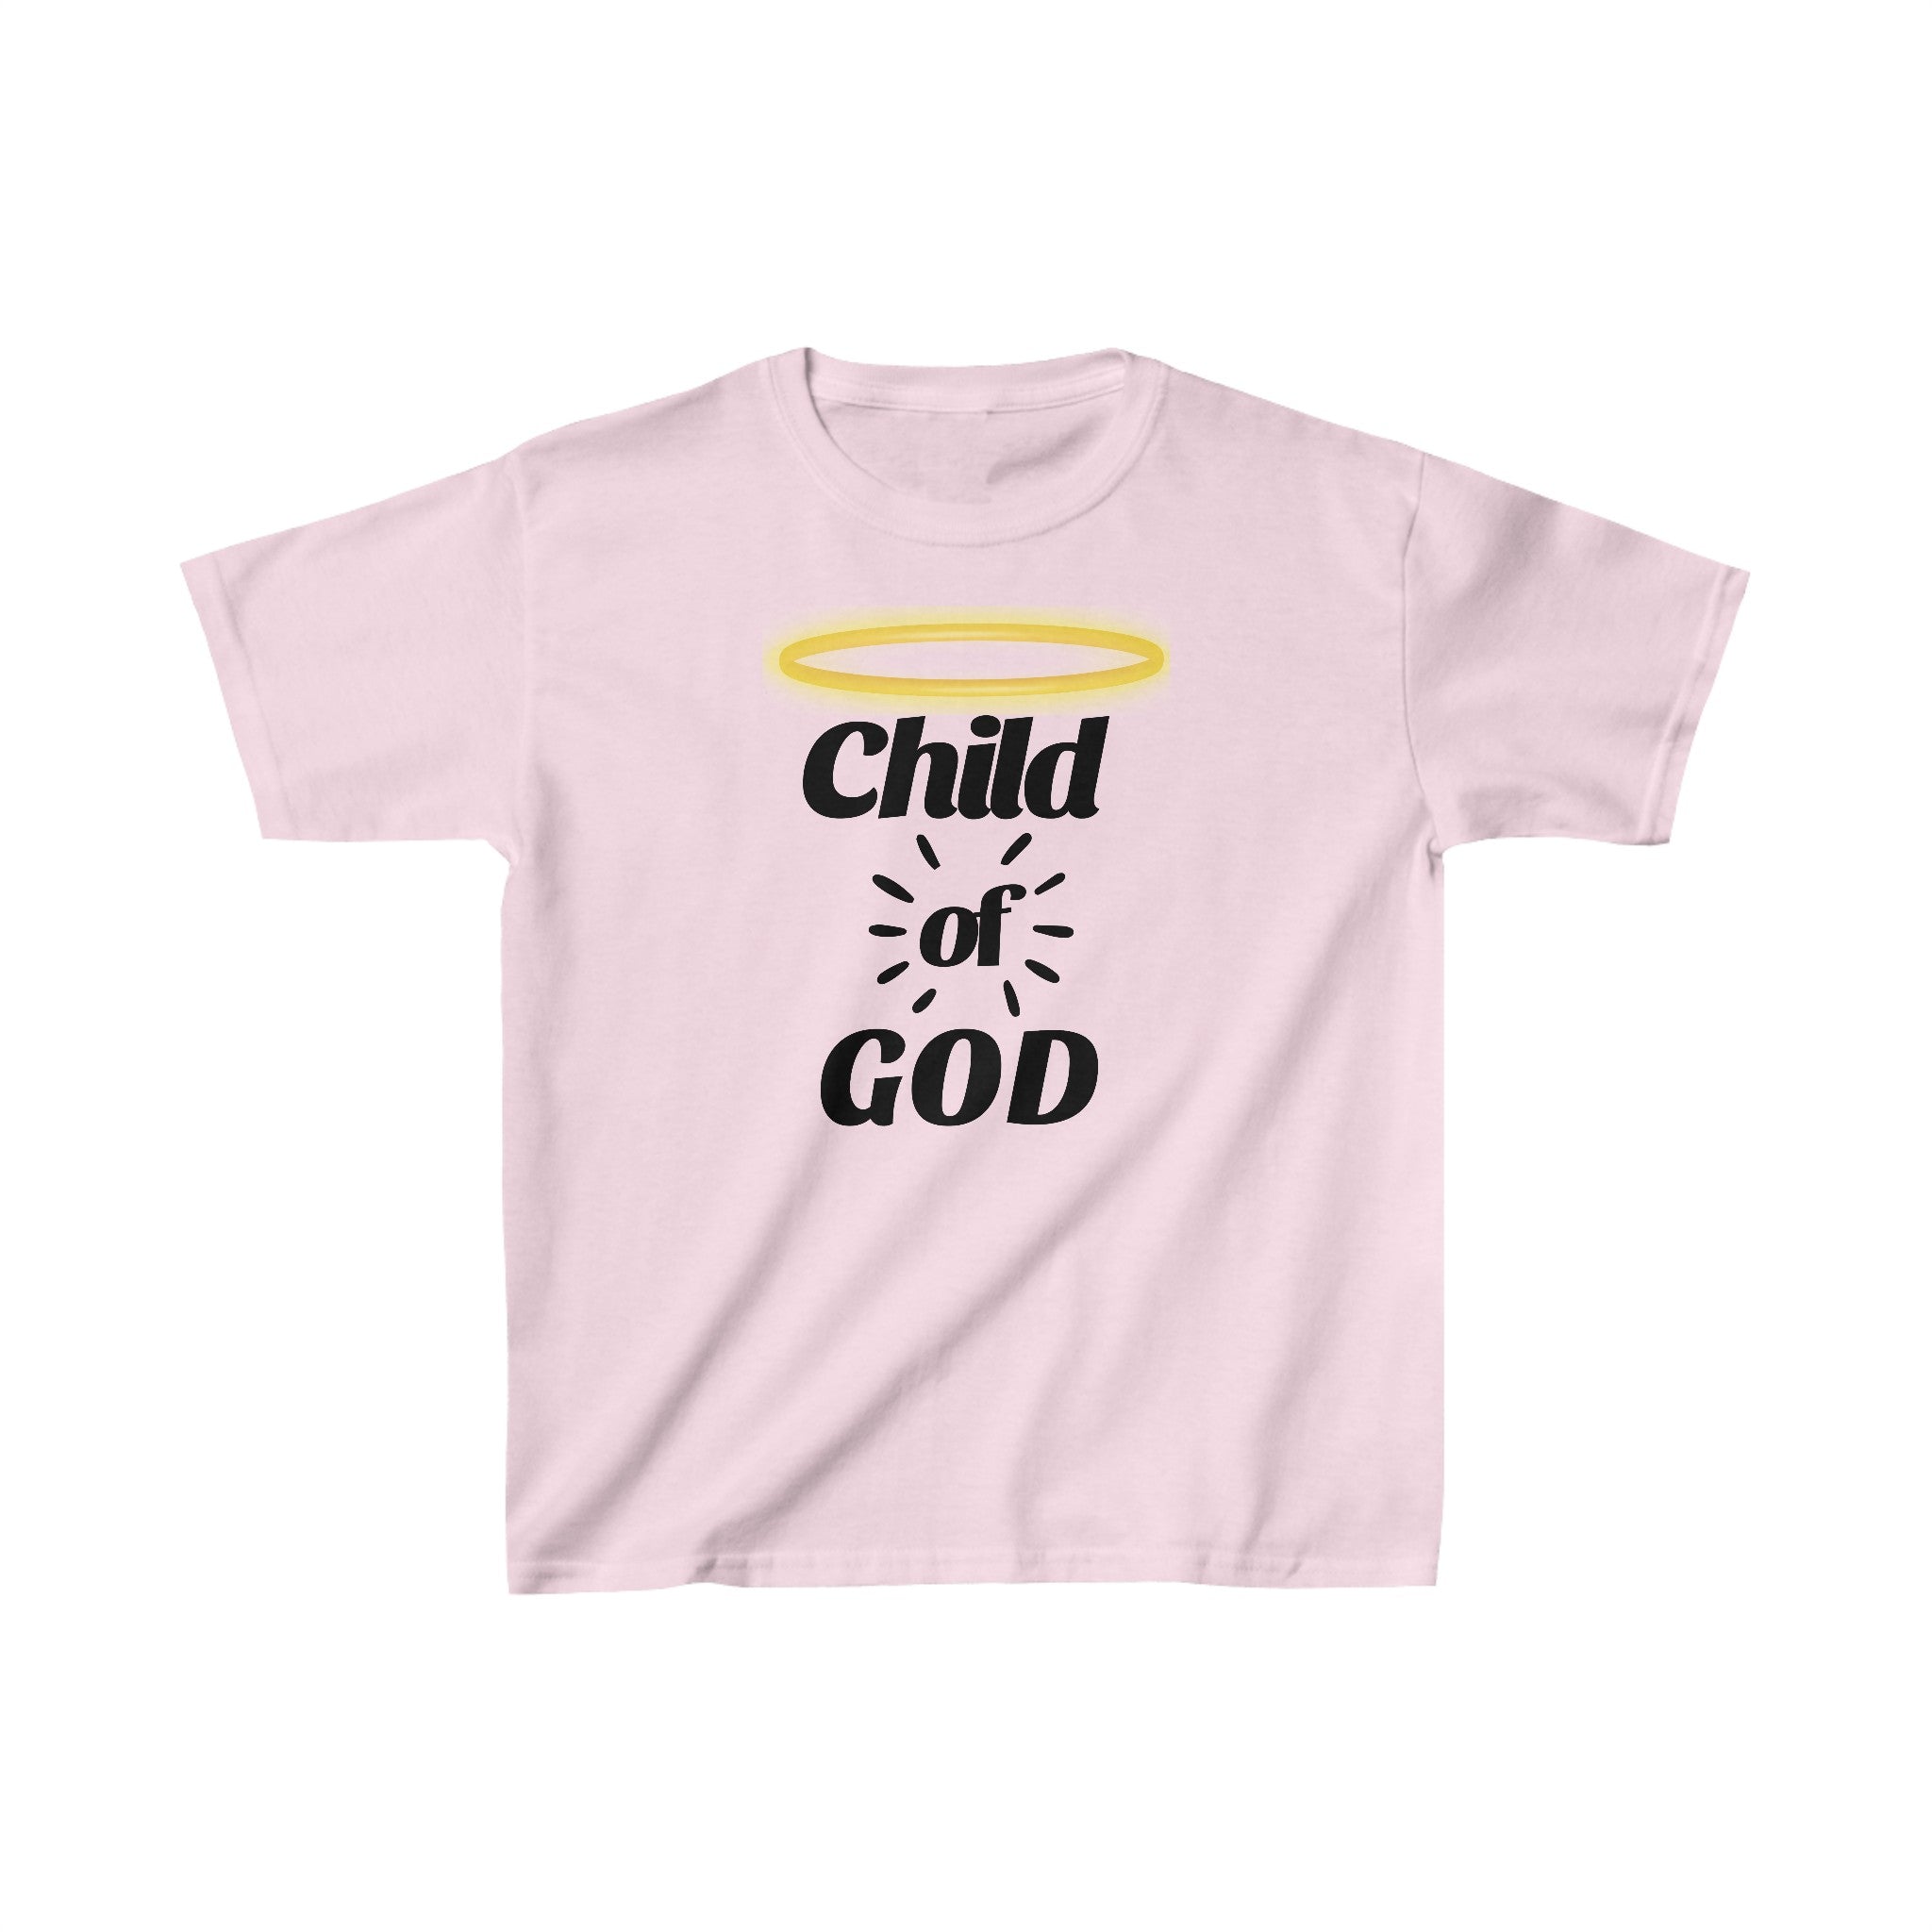 Child of God Kids Heavy Cotton™ Tee